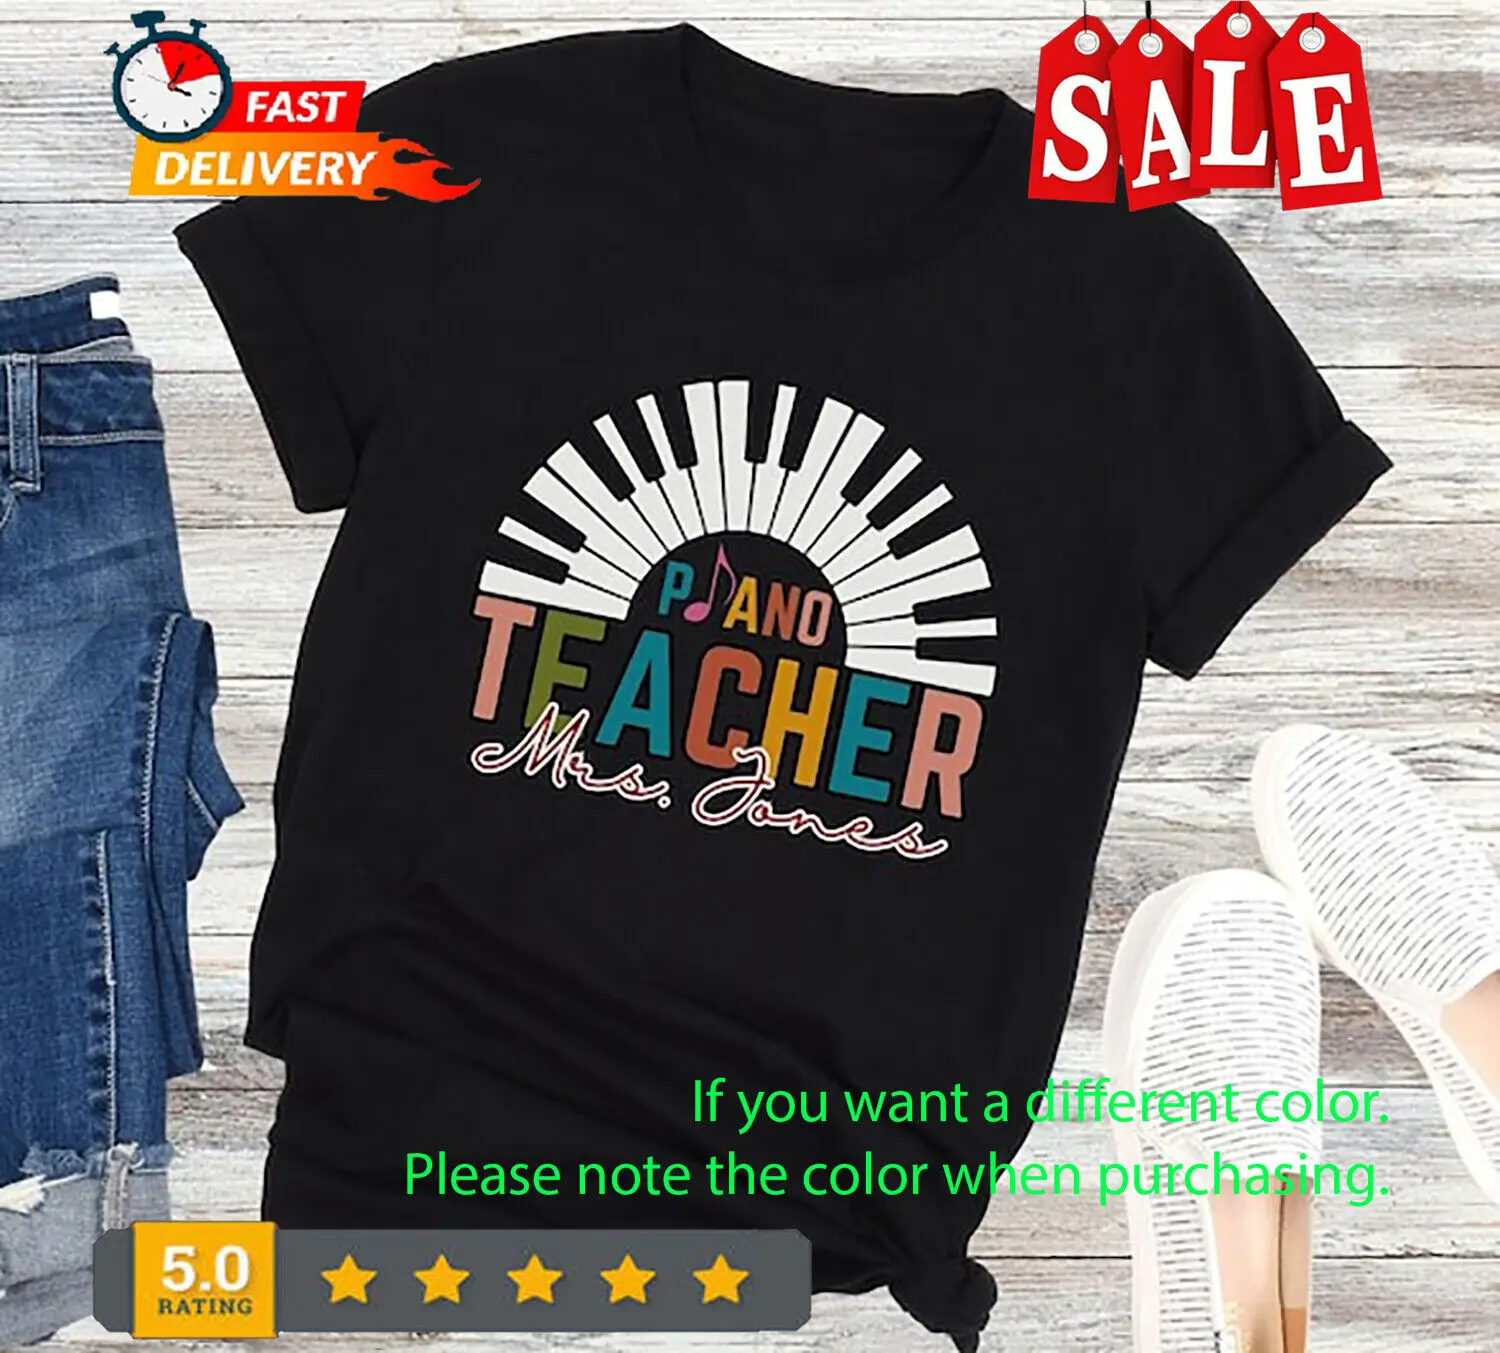 Изработена по поръчка риза за учители по пиано, персонализиран подарък за учители по пиано, името на Пиано Teac с дълъг ръкав